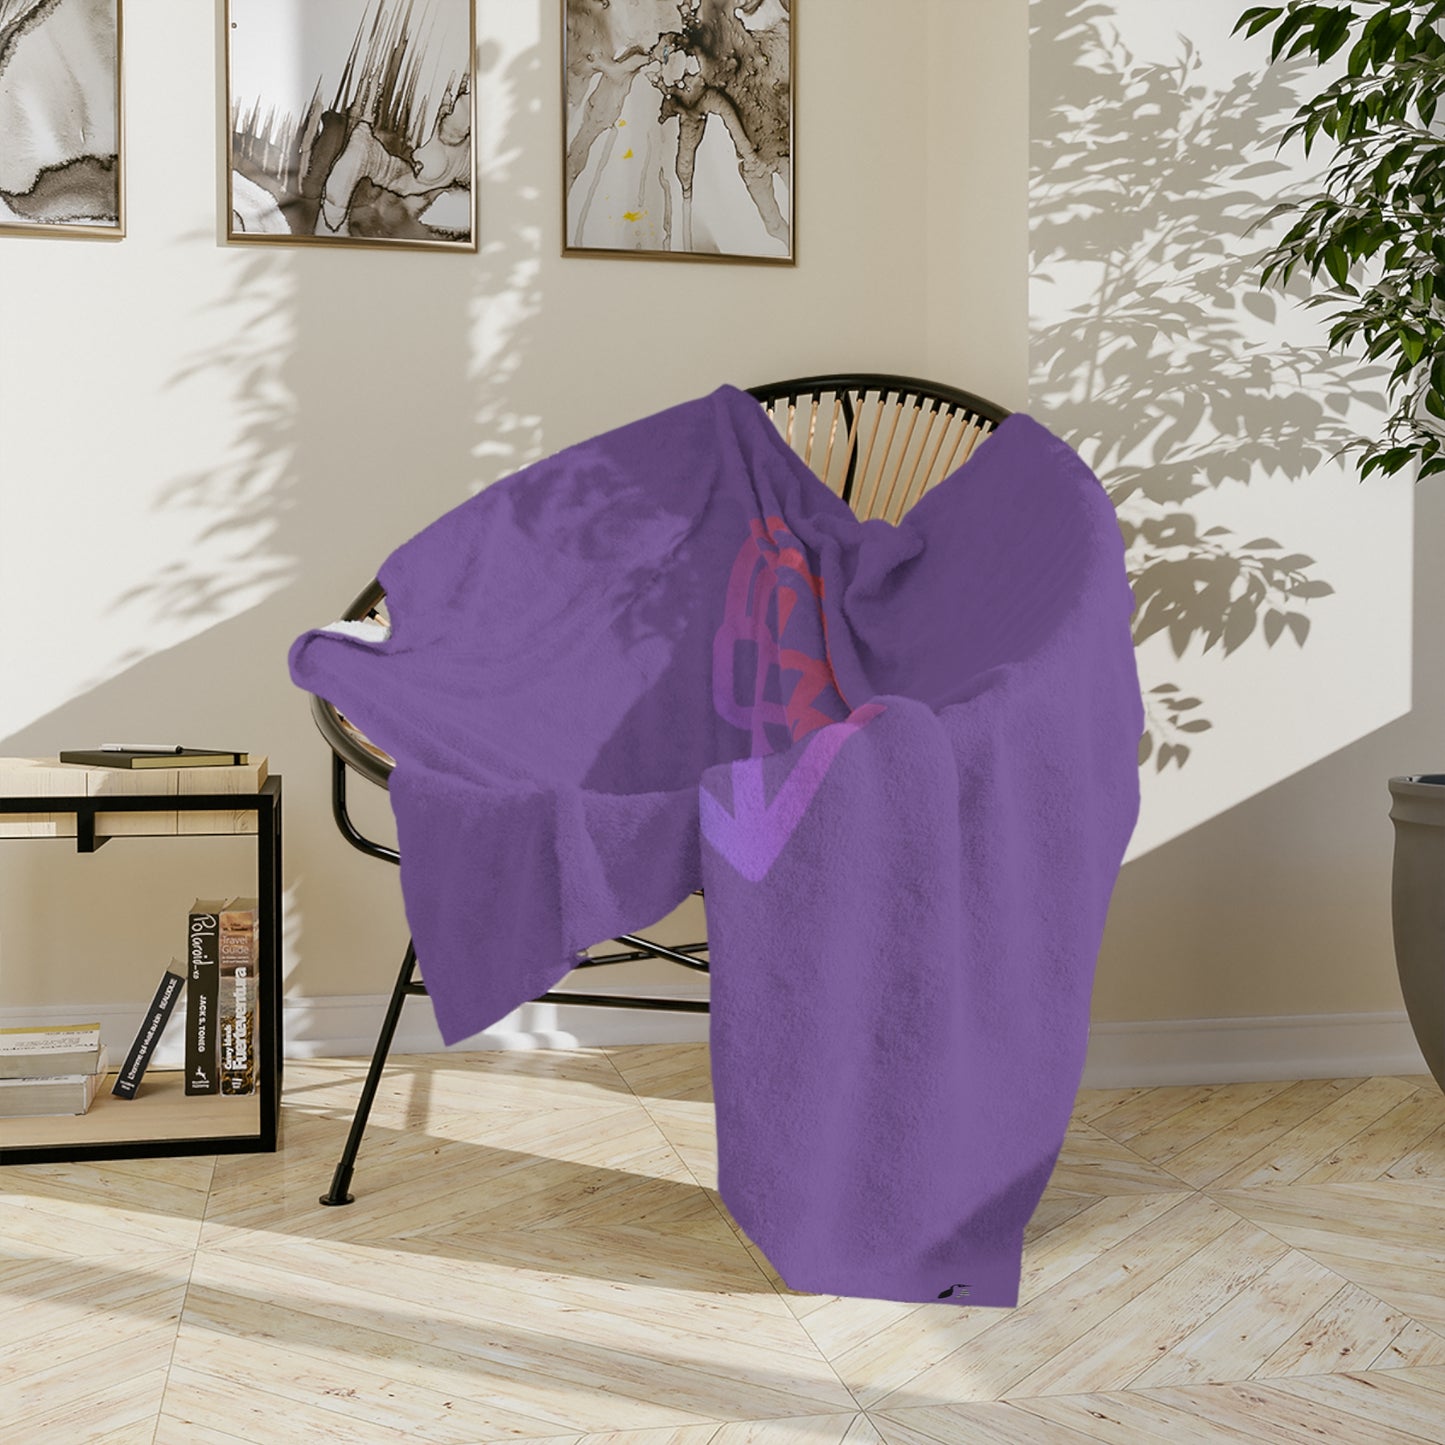 Velveteen Minky Blanket: Gaming Lite Purple